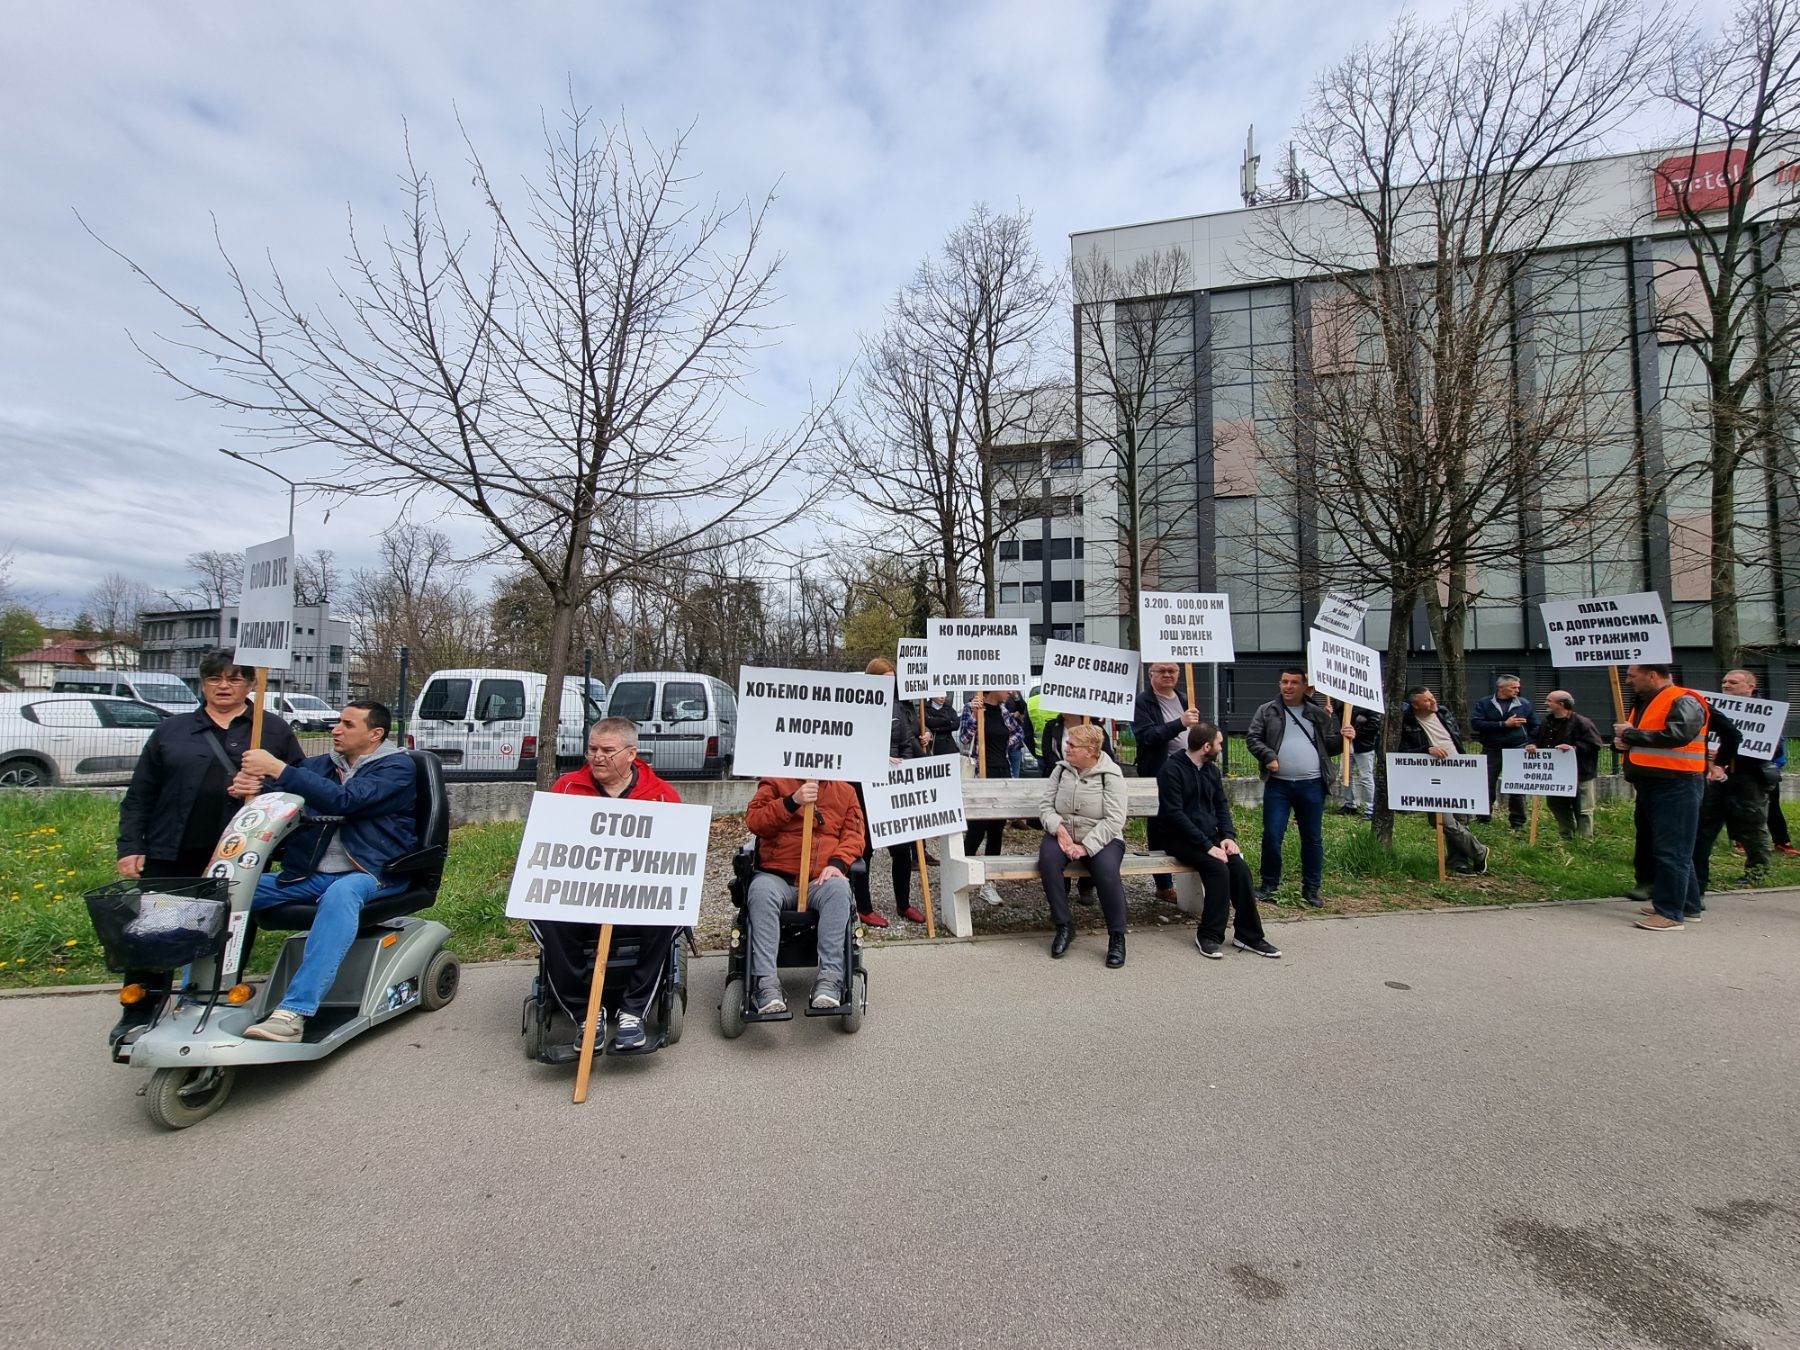  Radnici Centra za zapošljavanje invalida najavili štrajk glađu 